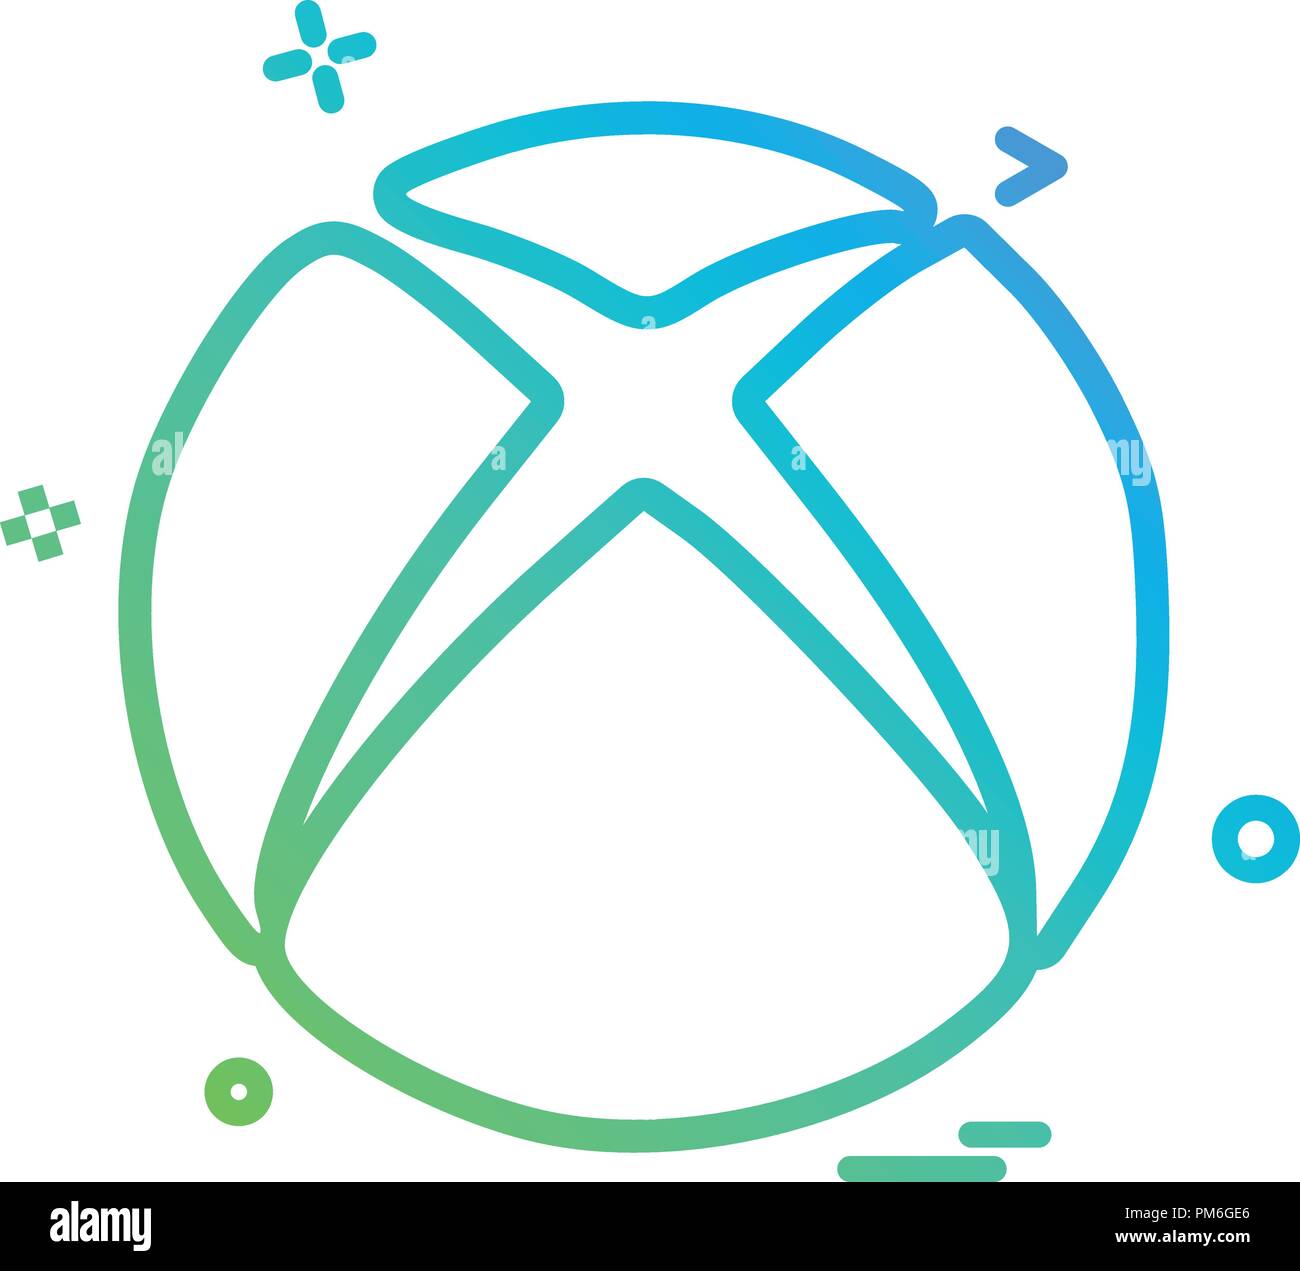 Xbox icon design vector Stock Vector